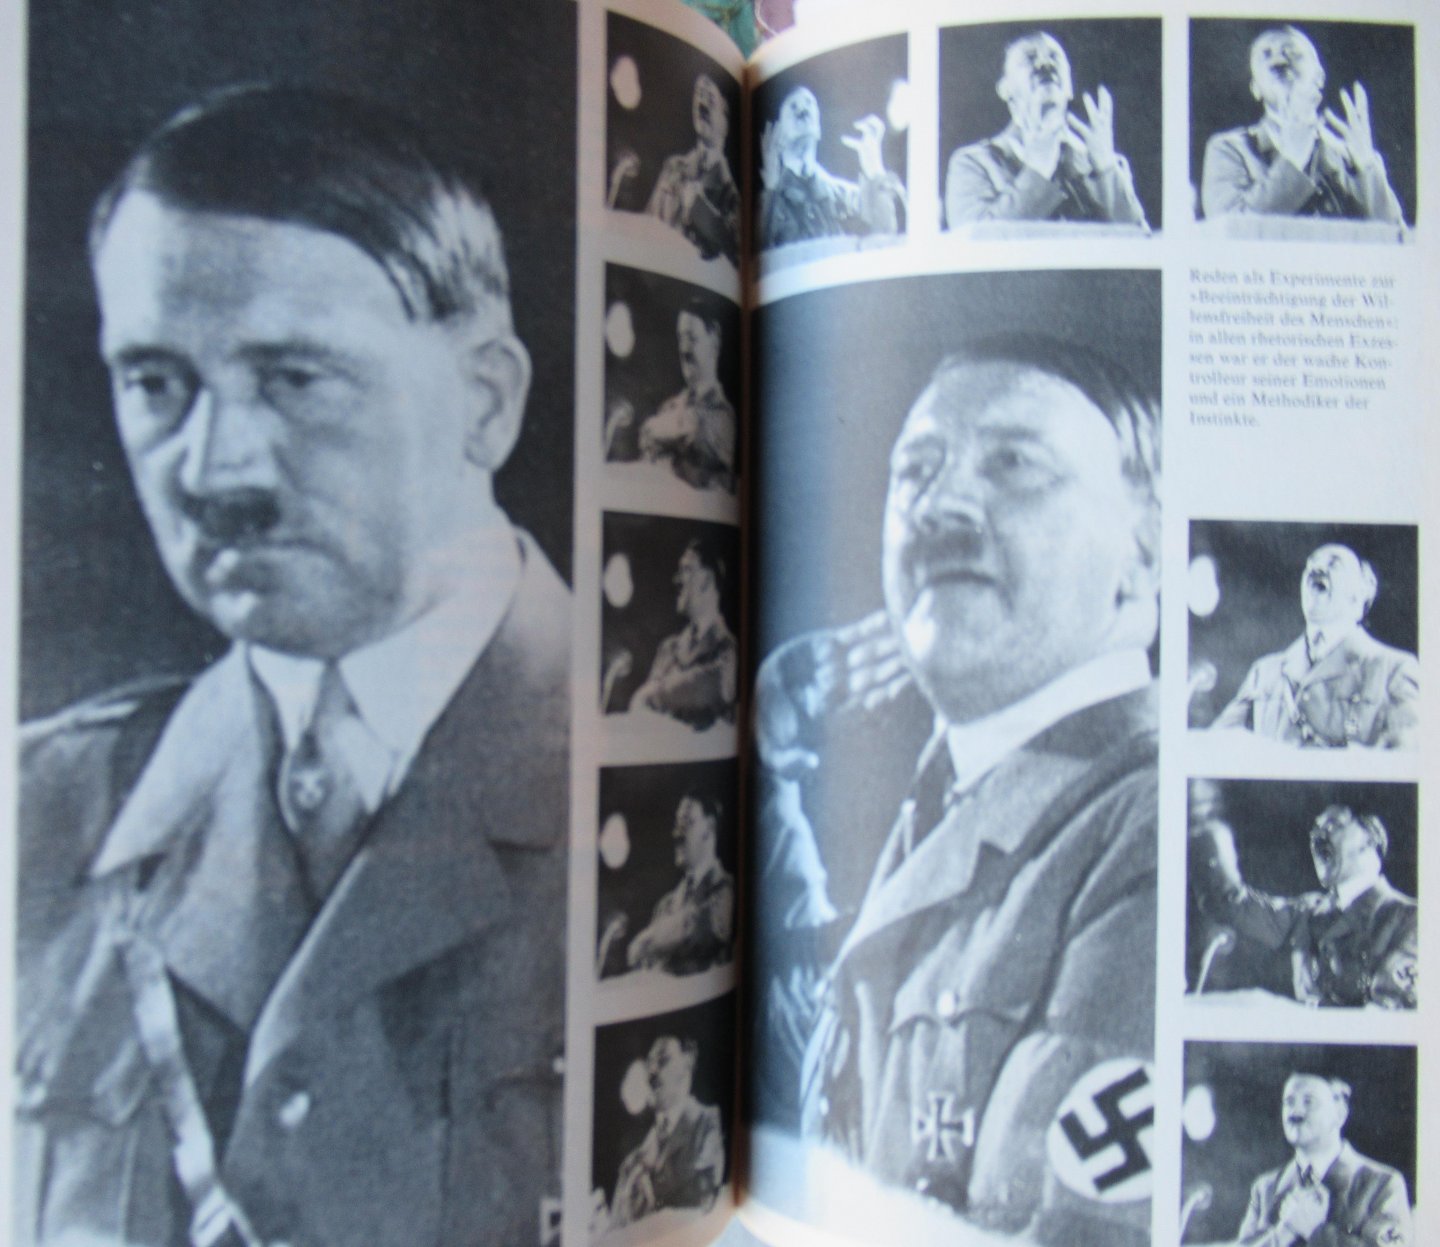 Fest, Joachim C. - Hitler. Eine biographie